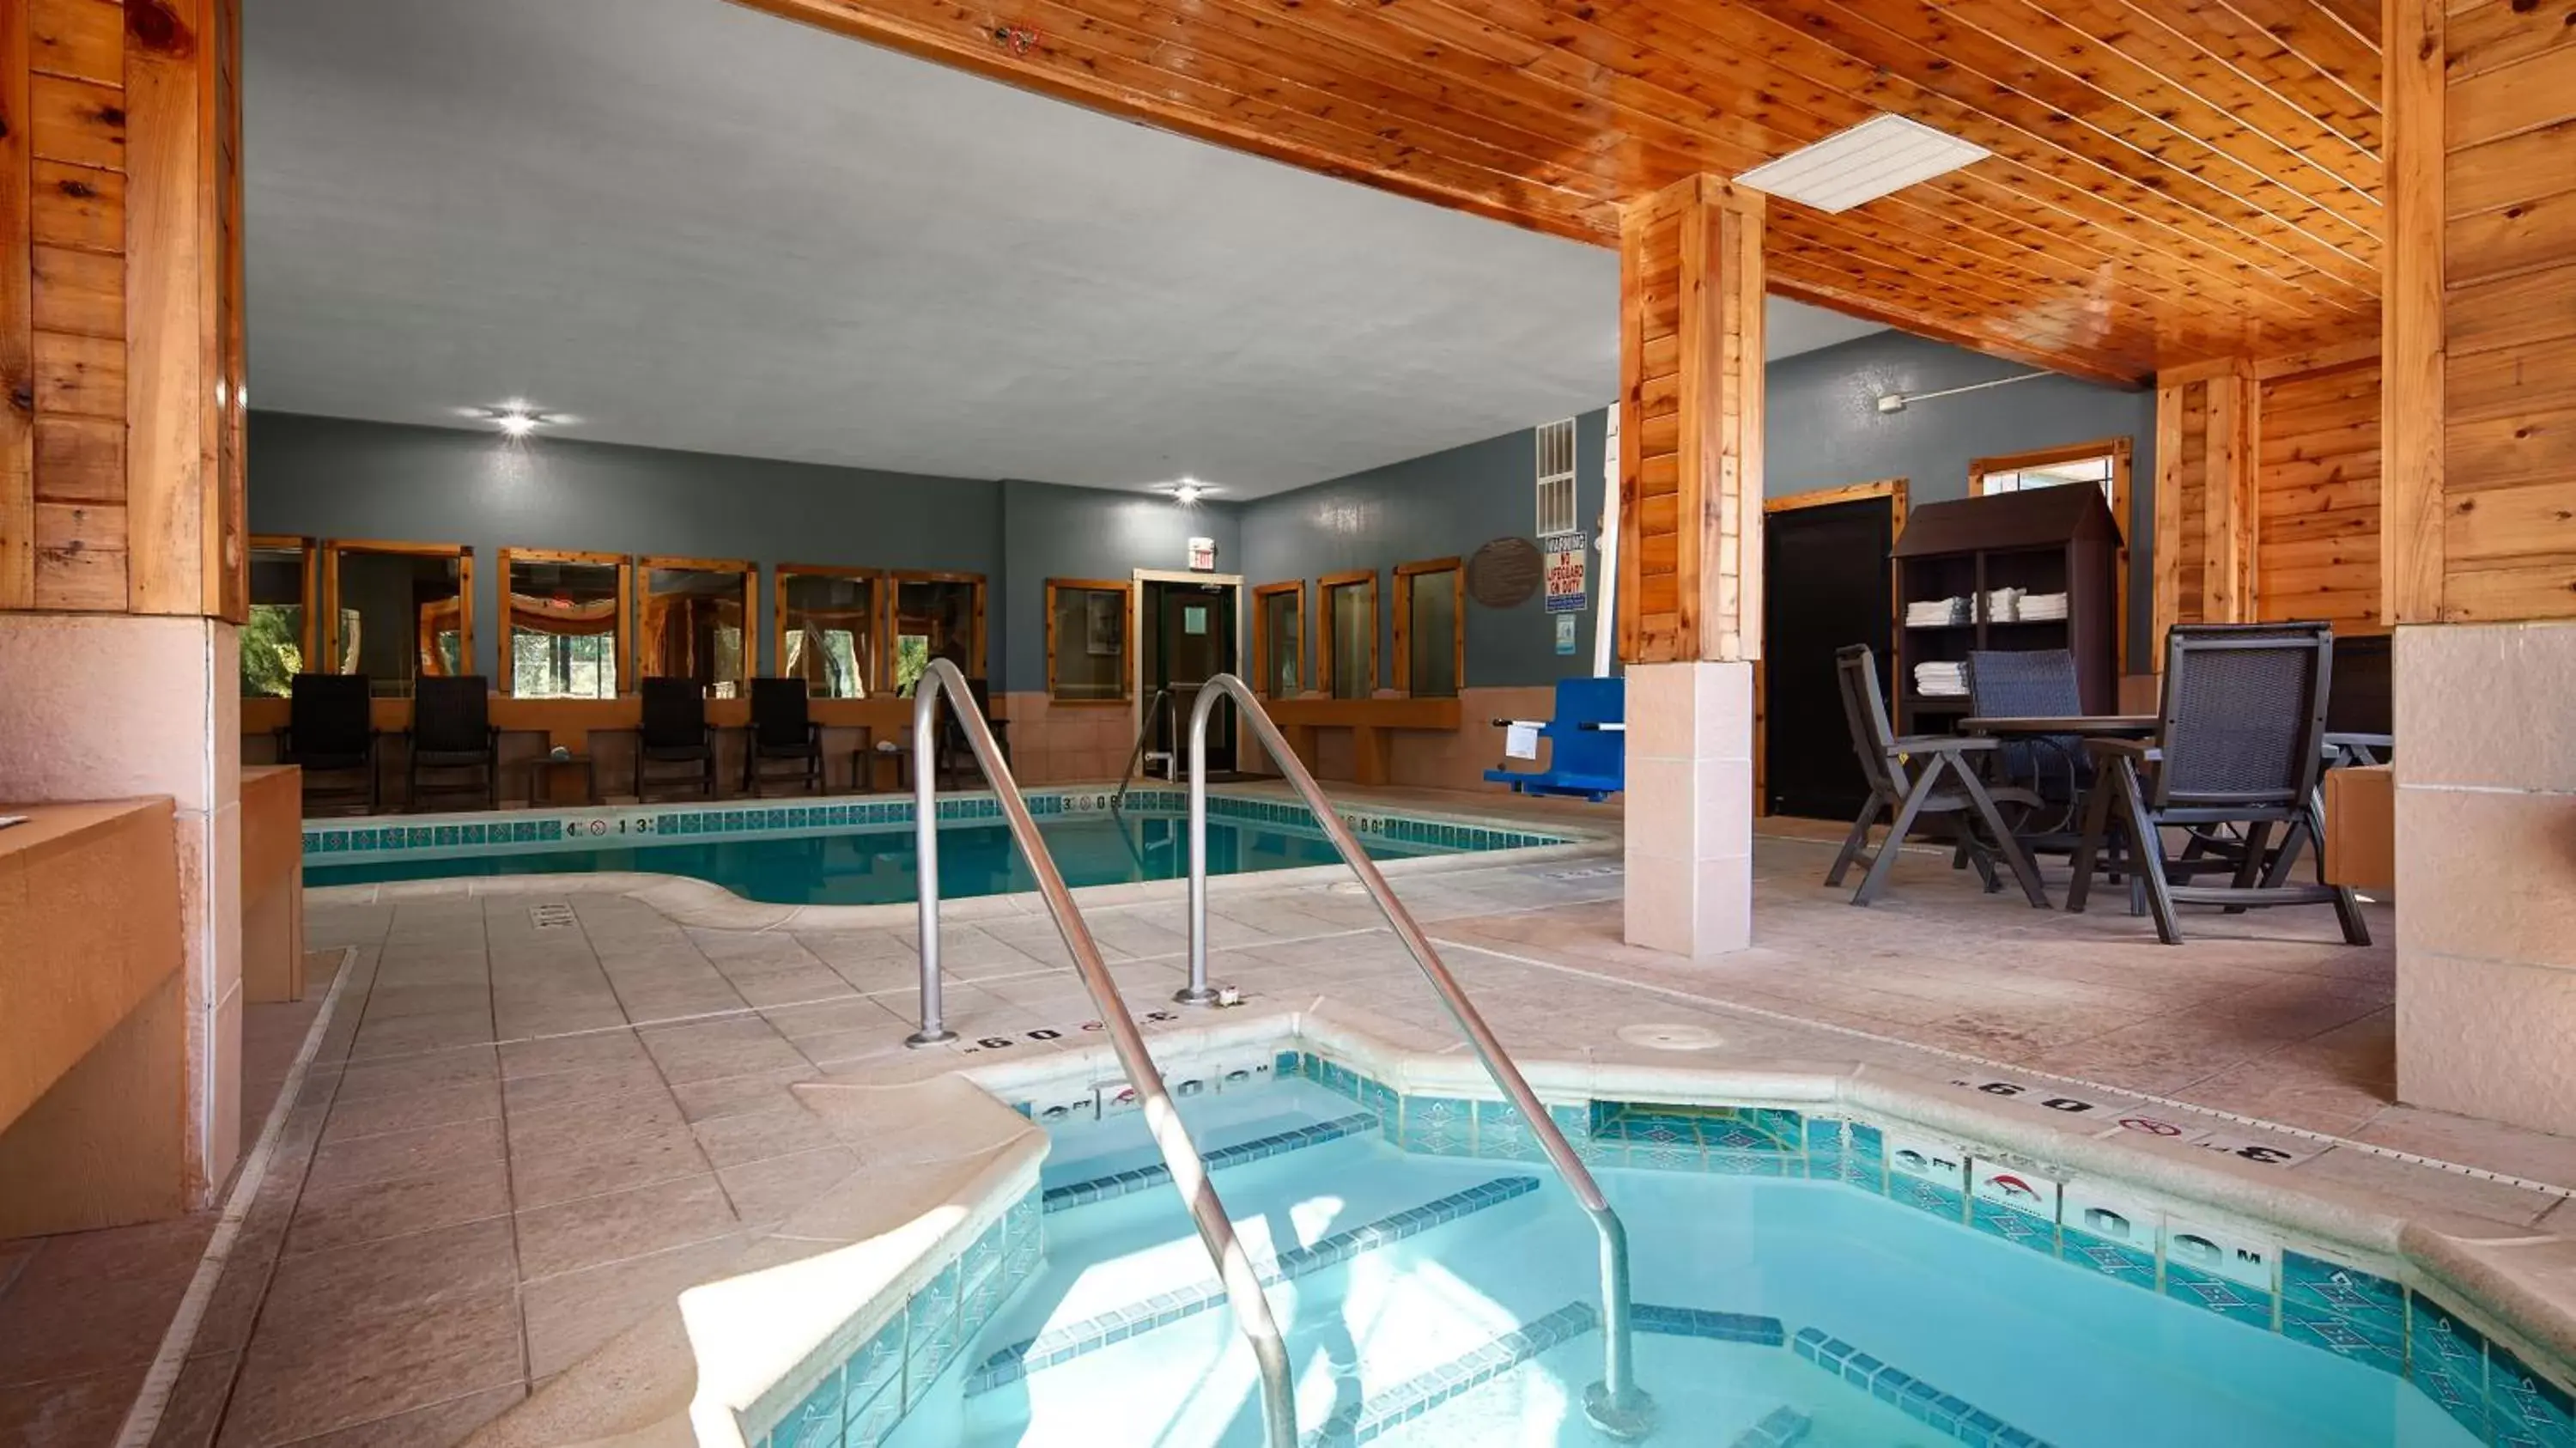 Swimming Pool in Best Western Plus Kalamazoo Suites